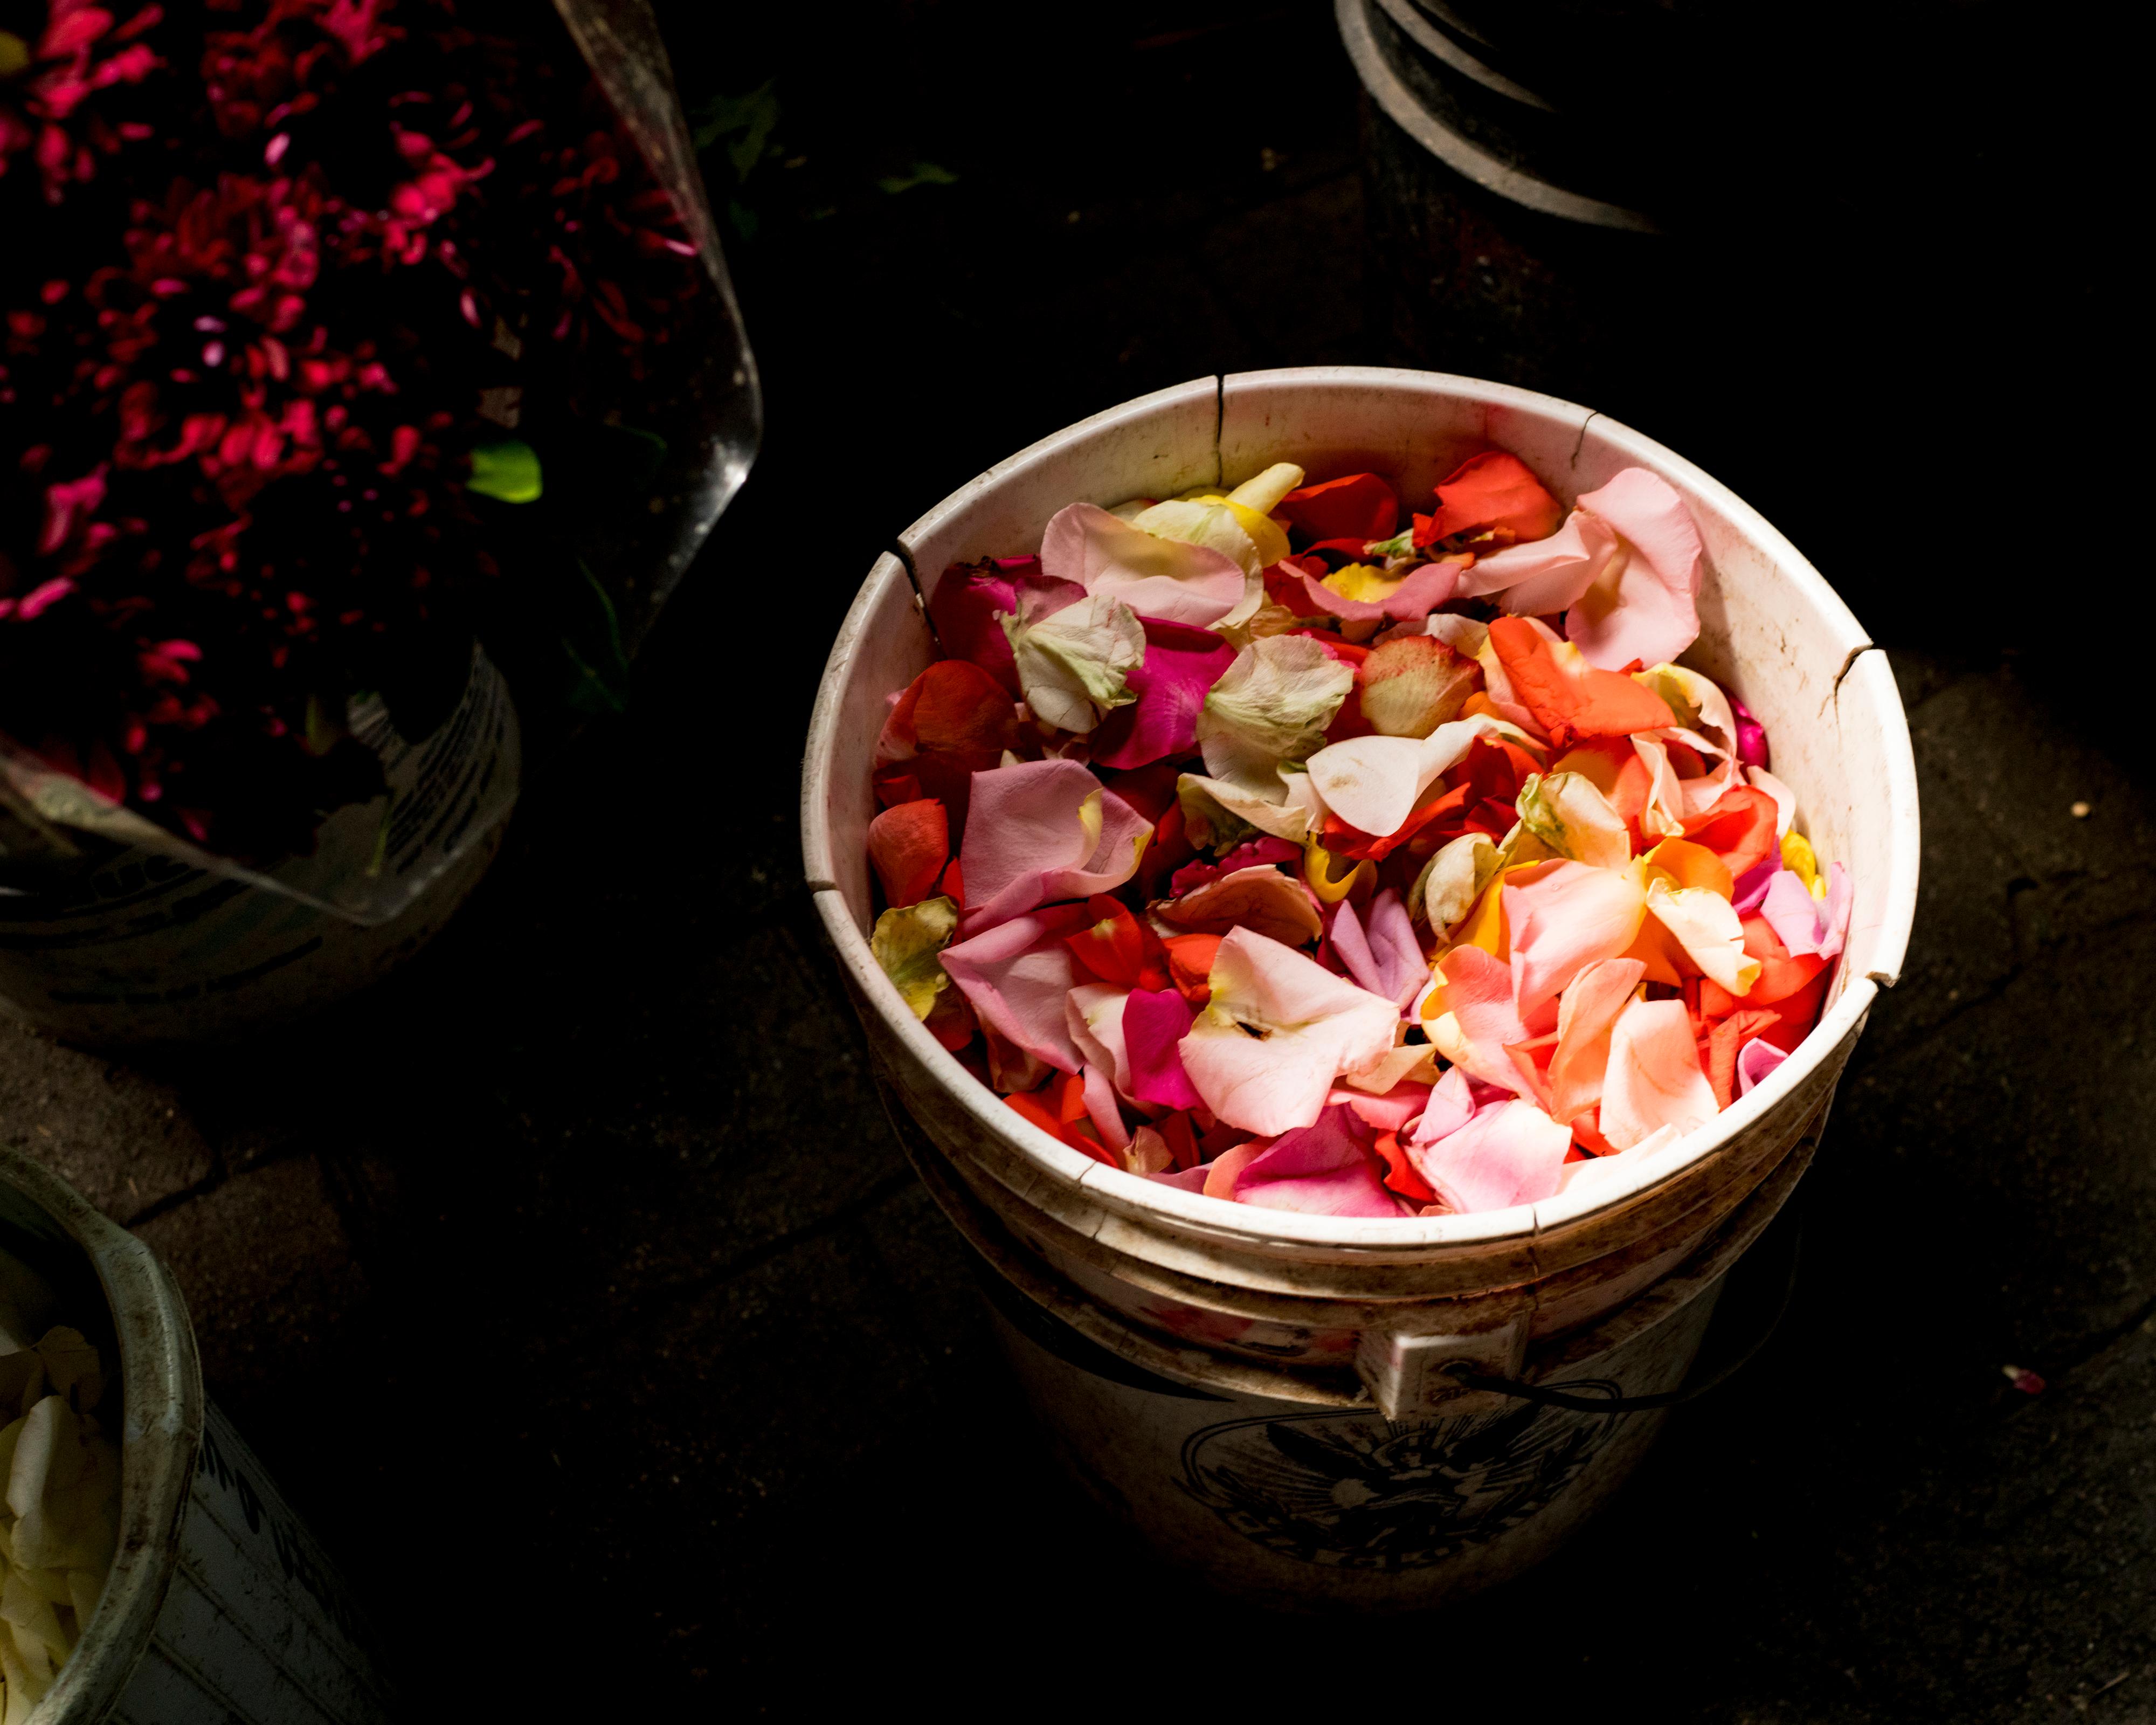 Cig Harvey Color Photograph - Rose Petals (Waiting)